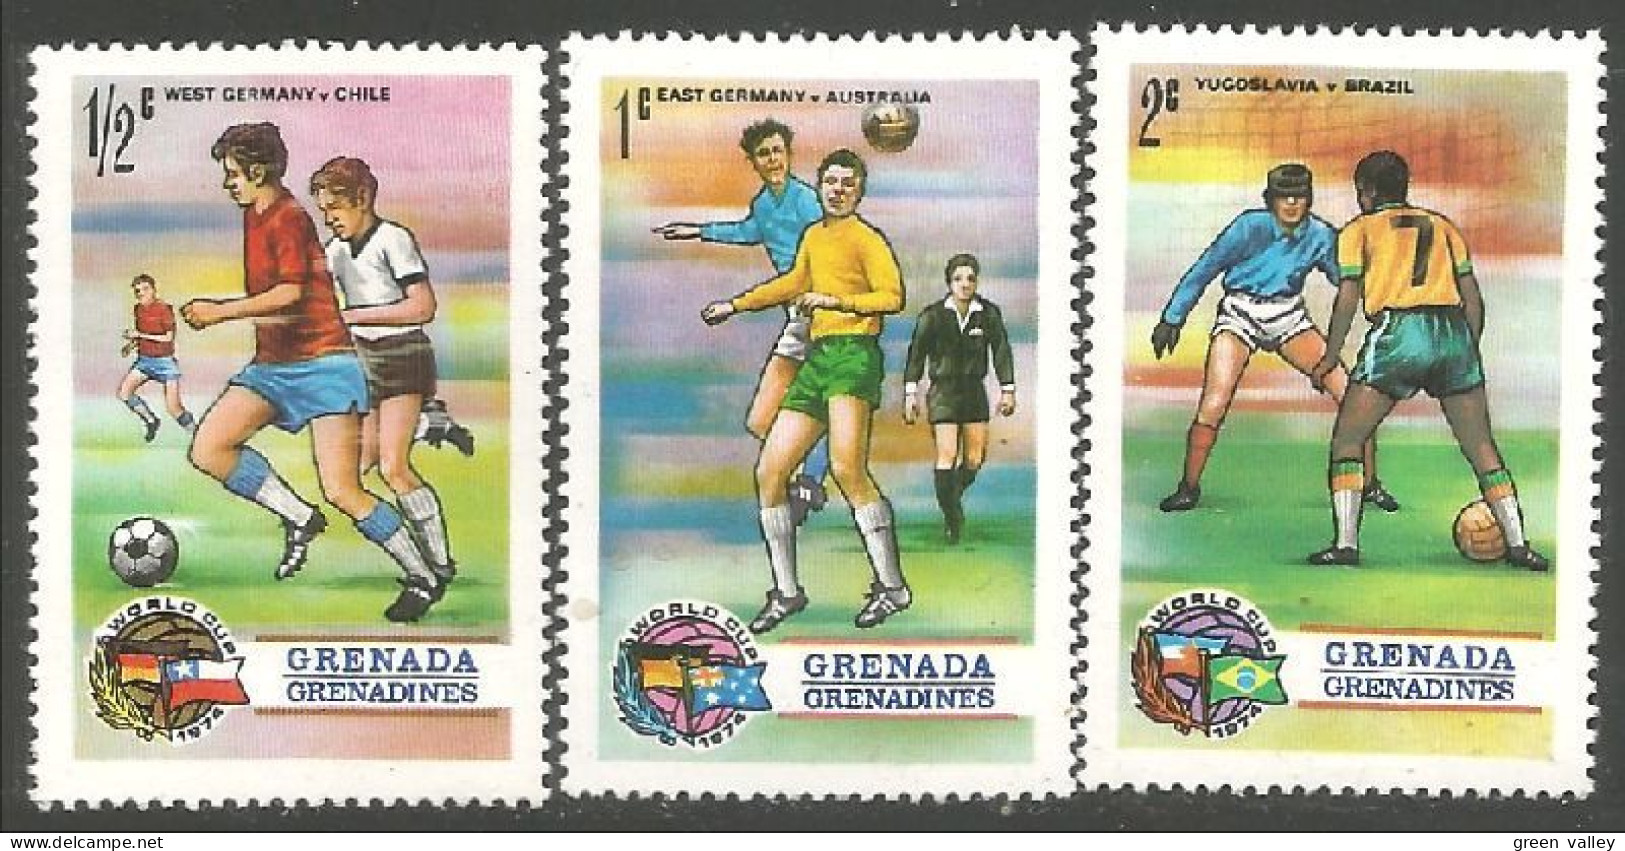 FB-25 Grenada Munich 1974 Football Soccer MNH ** Neuf SC - 1974 – West Germany